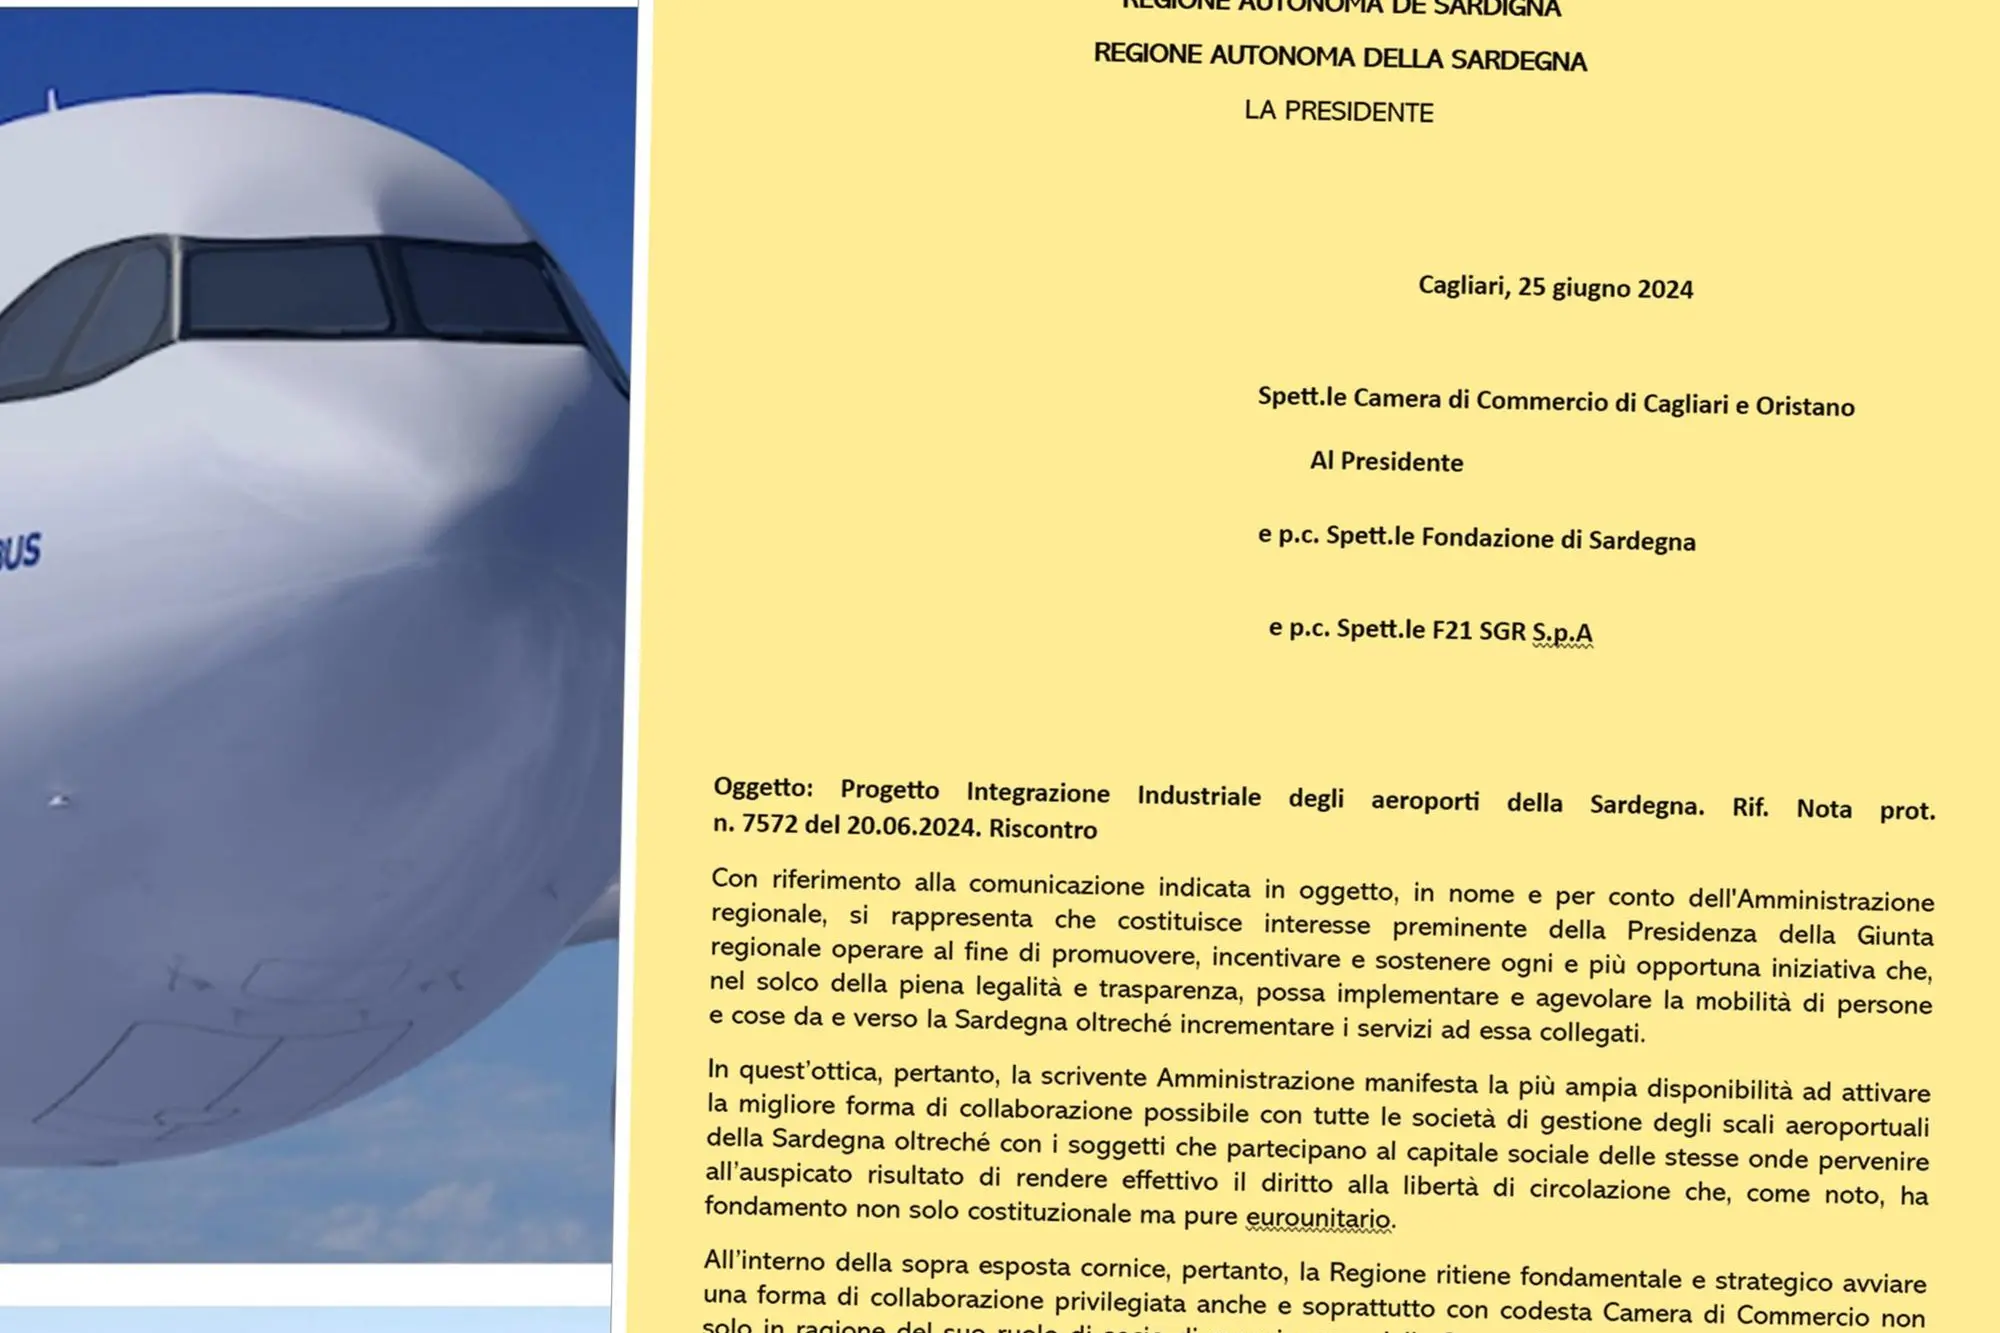 L'aeroporto di Cagliari e la lettera "riservata" della presidente della Regione inviata ai vari soggetti con la quale esprime la disonibilità a partecipare al progetto di privatizzazione del primo scalo sardo (L'Unione Sarda)